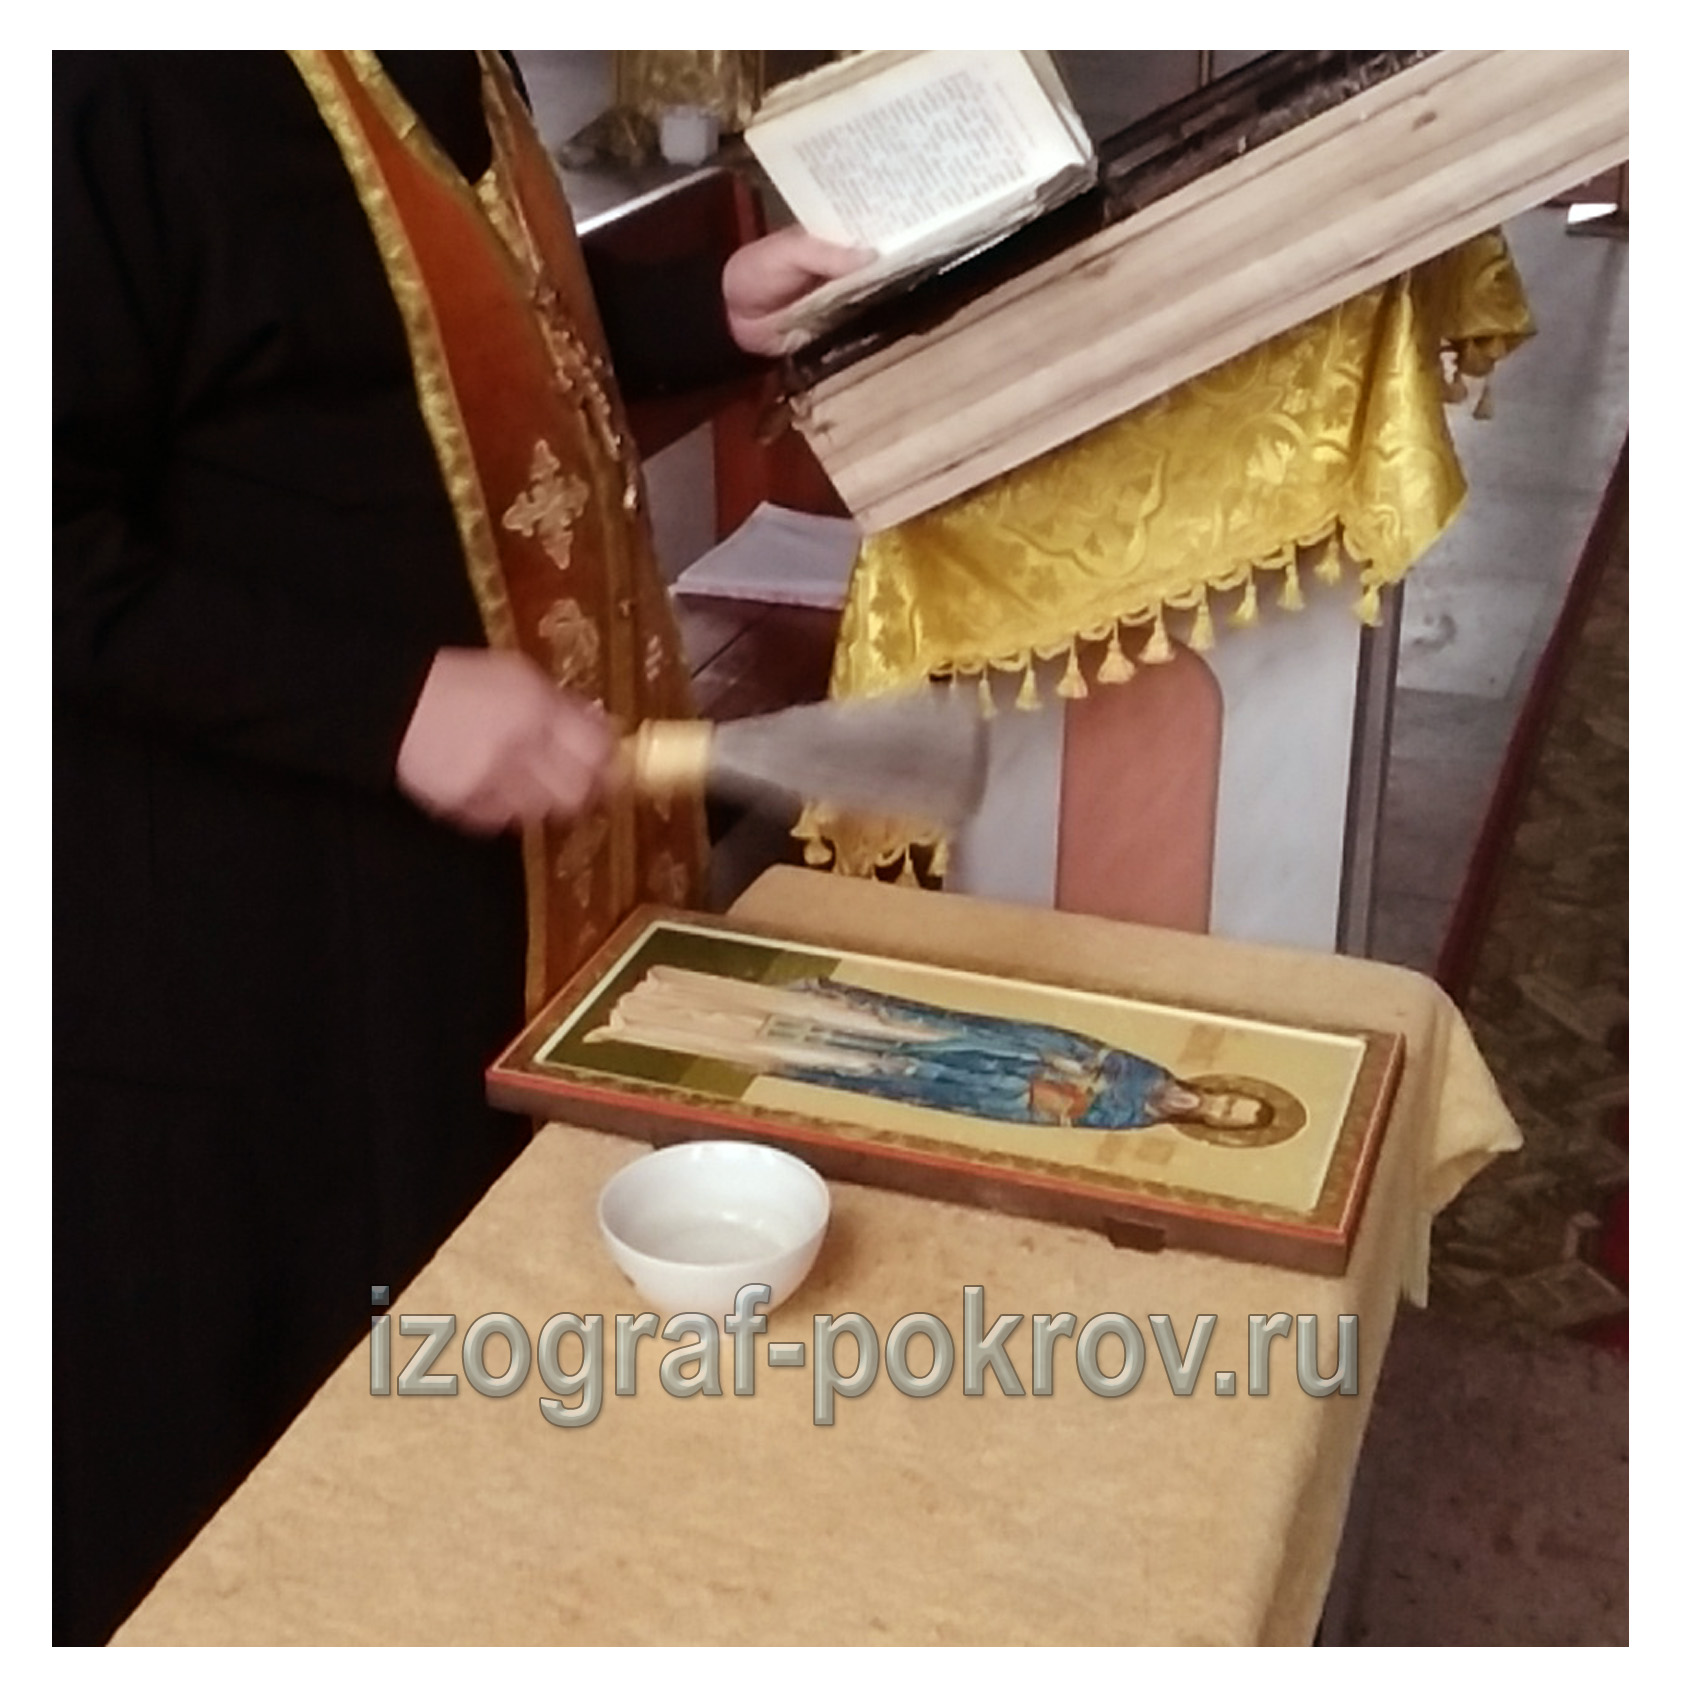 Освящение готовой иконы Петр Богородский в храме Покрова Пресвятой йБогородицы